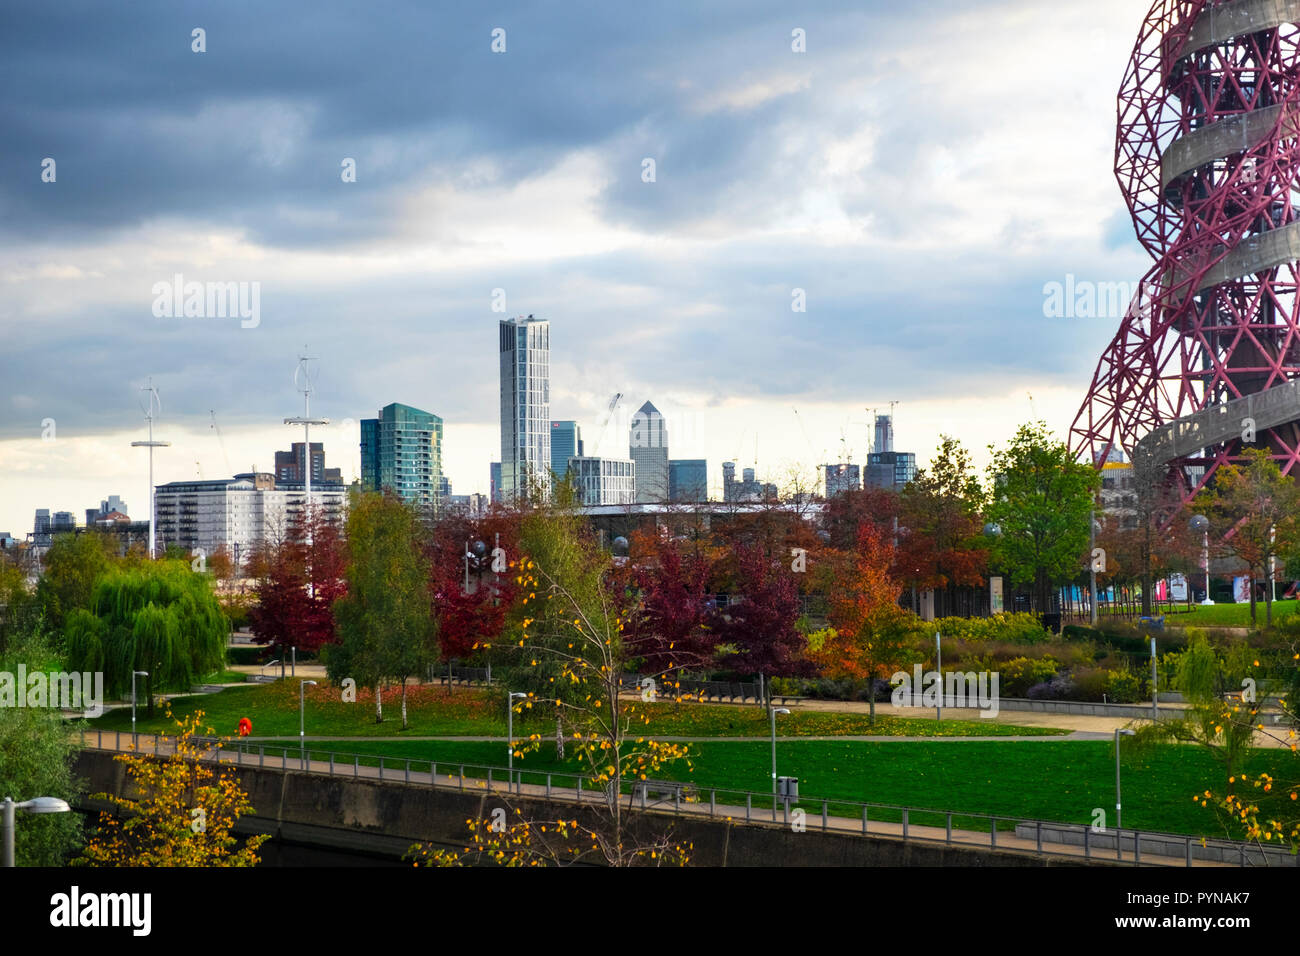 Le parc olympique à l'automne, le parc Queen Elizabeth, ArcelorMittal Orbit, canary wharf, Stratford, London, UK Banque D'Images